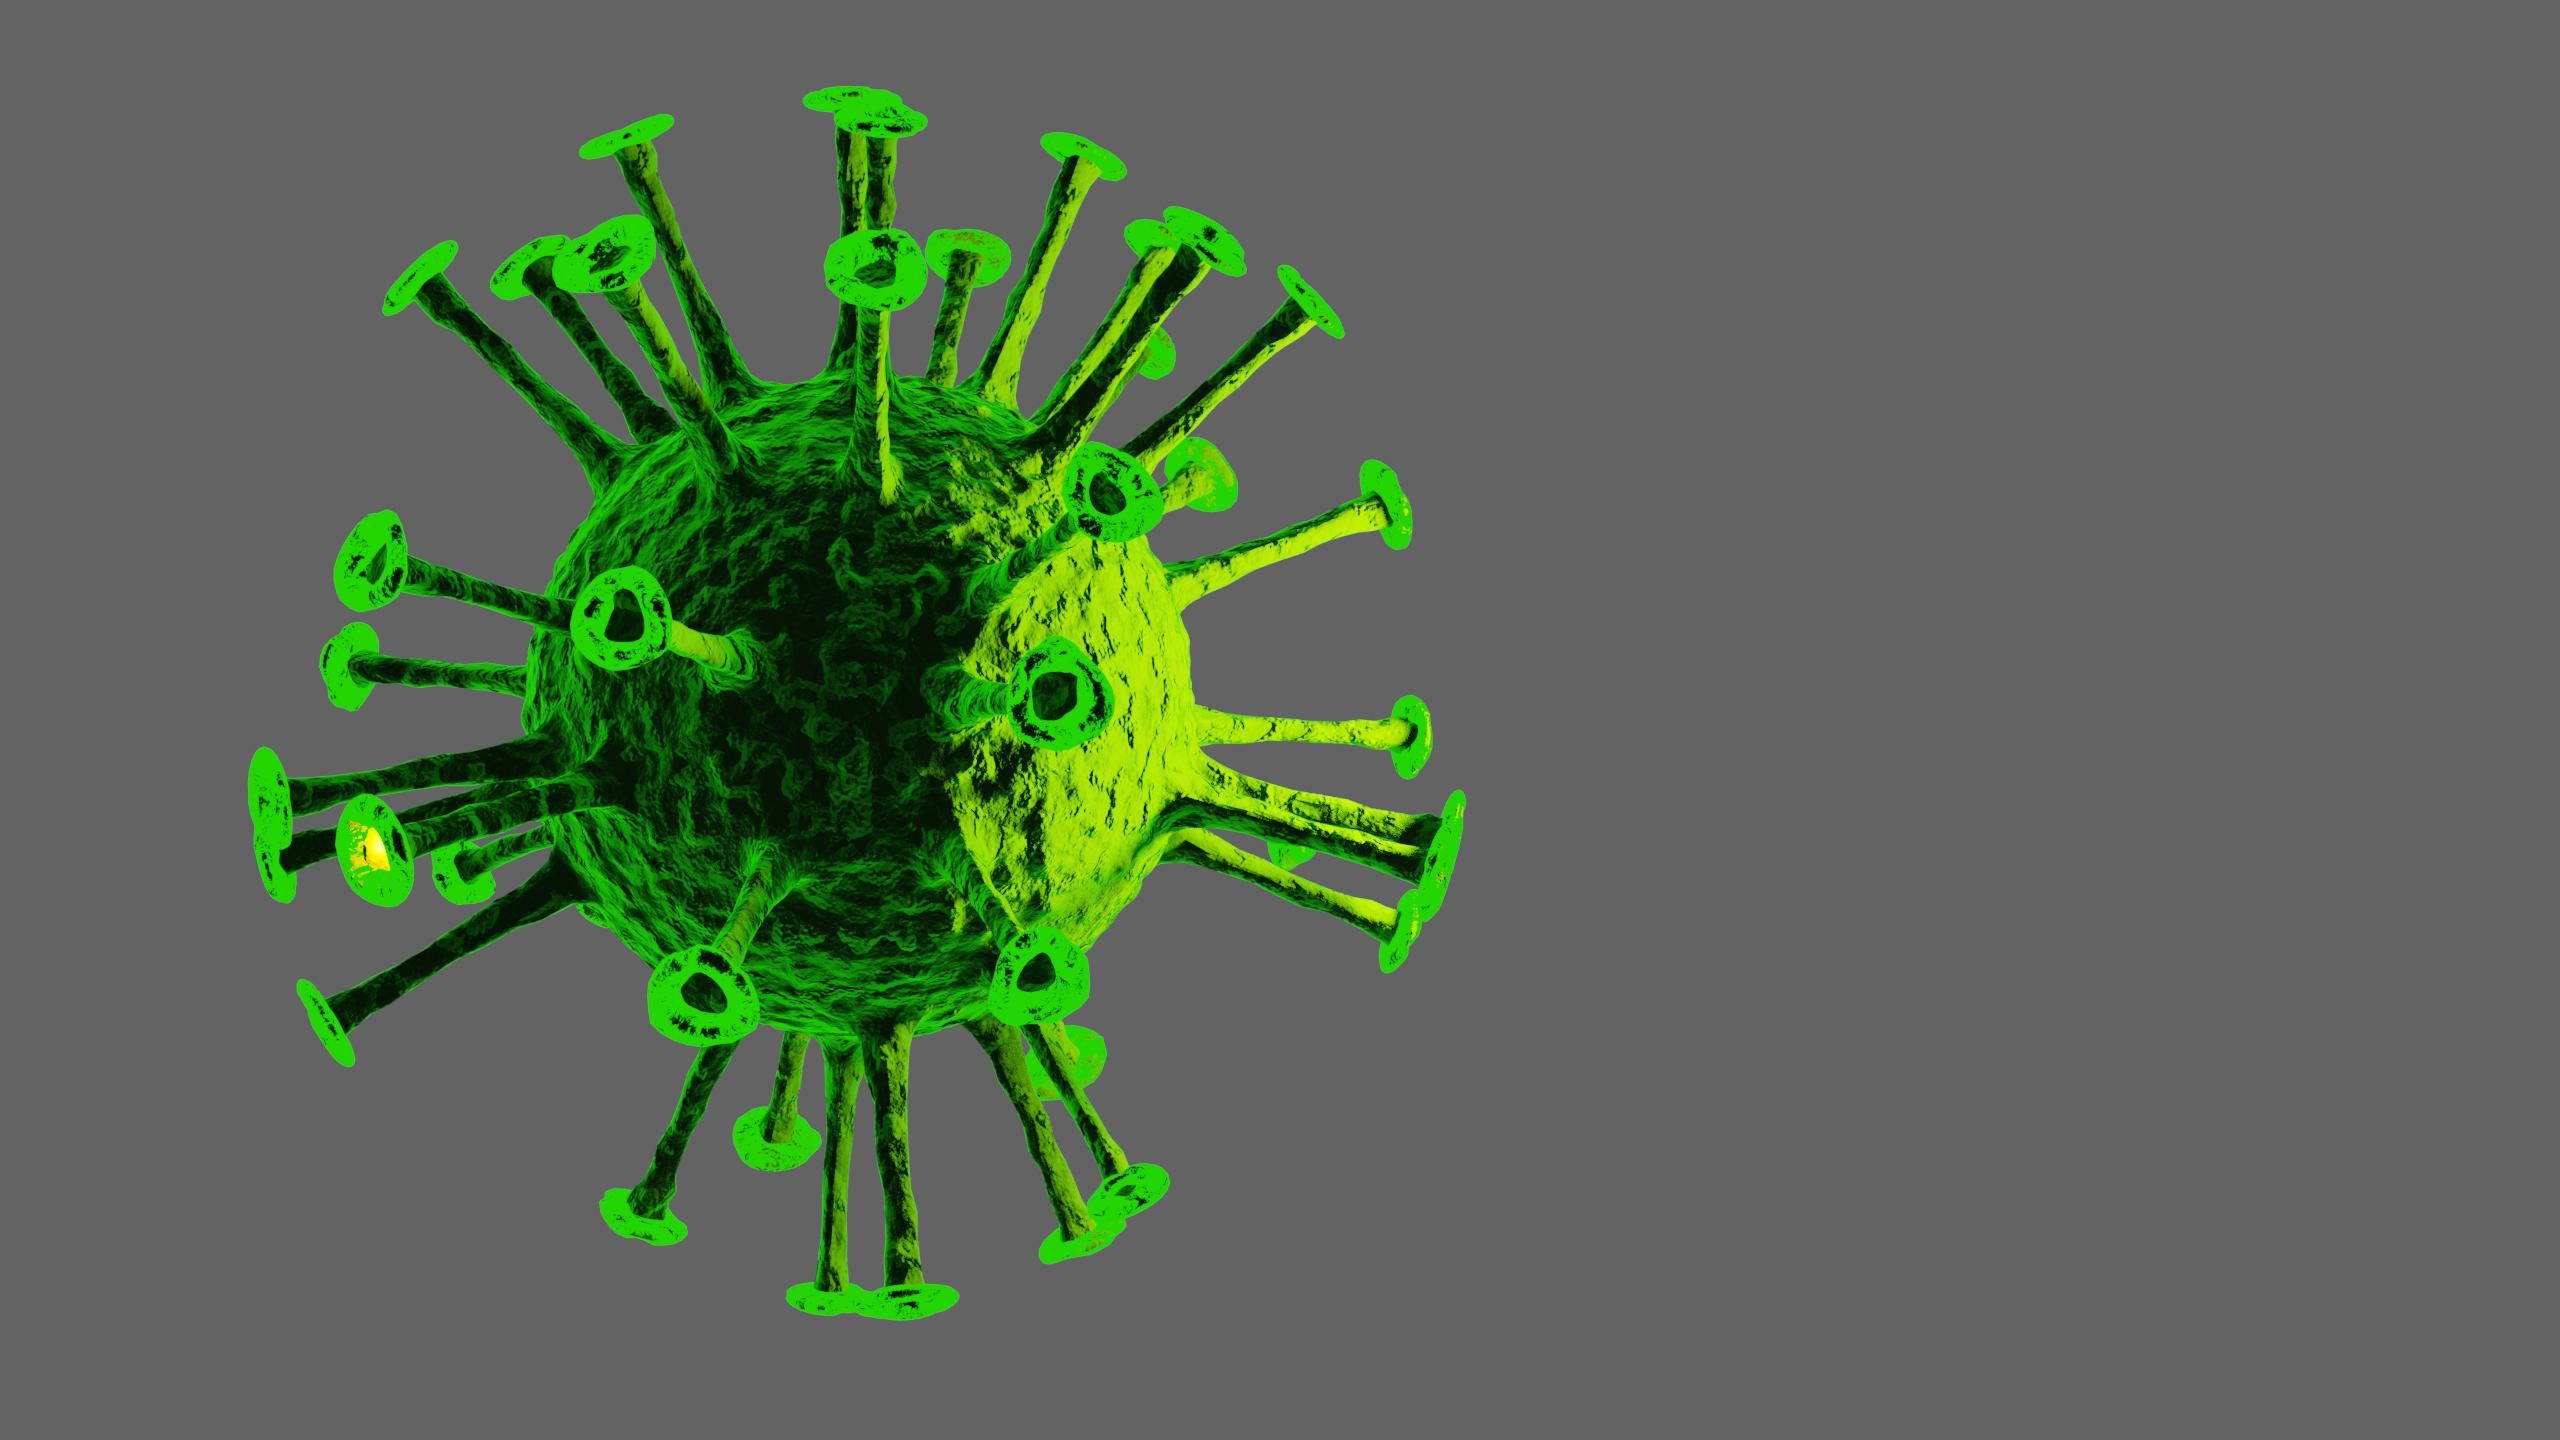 General 2560x1440 Virus simple background viruses